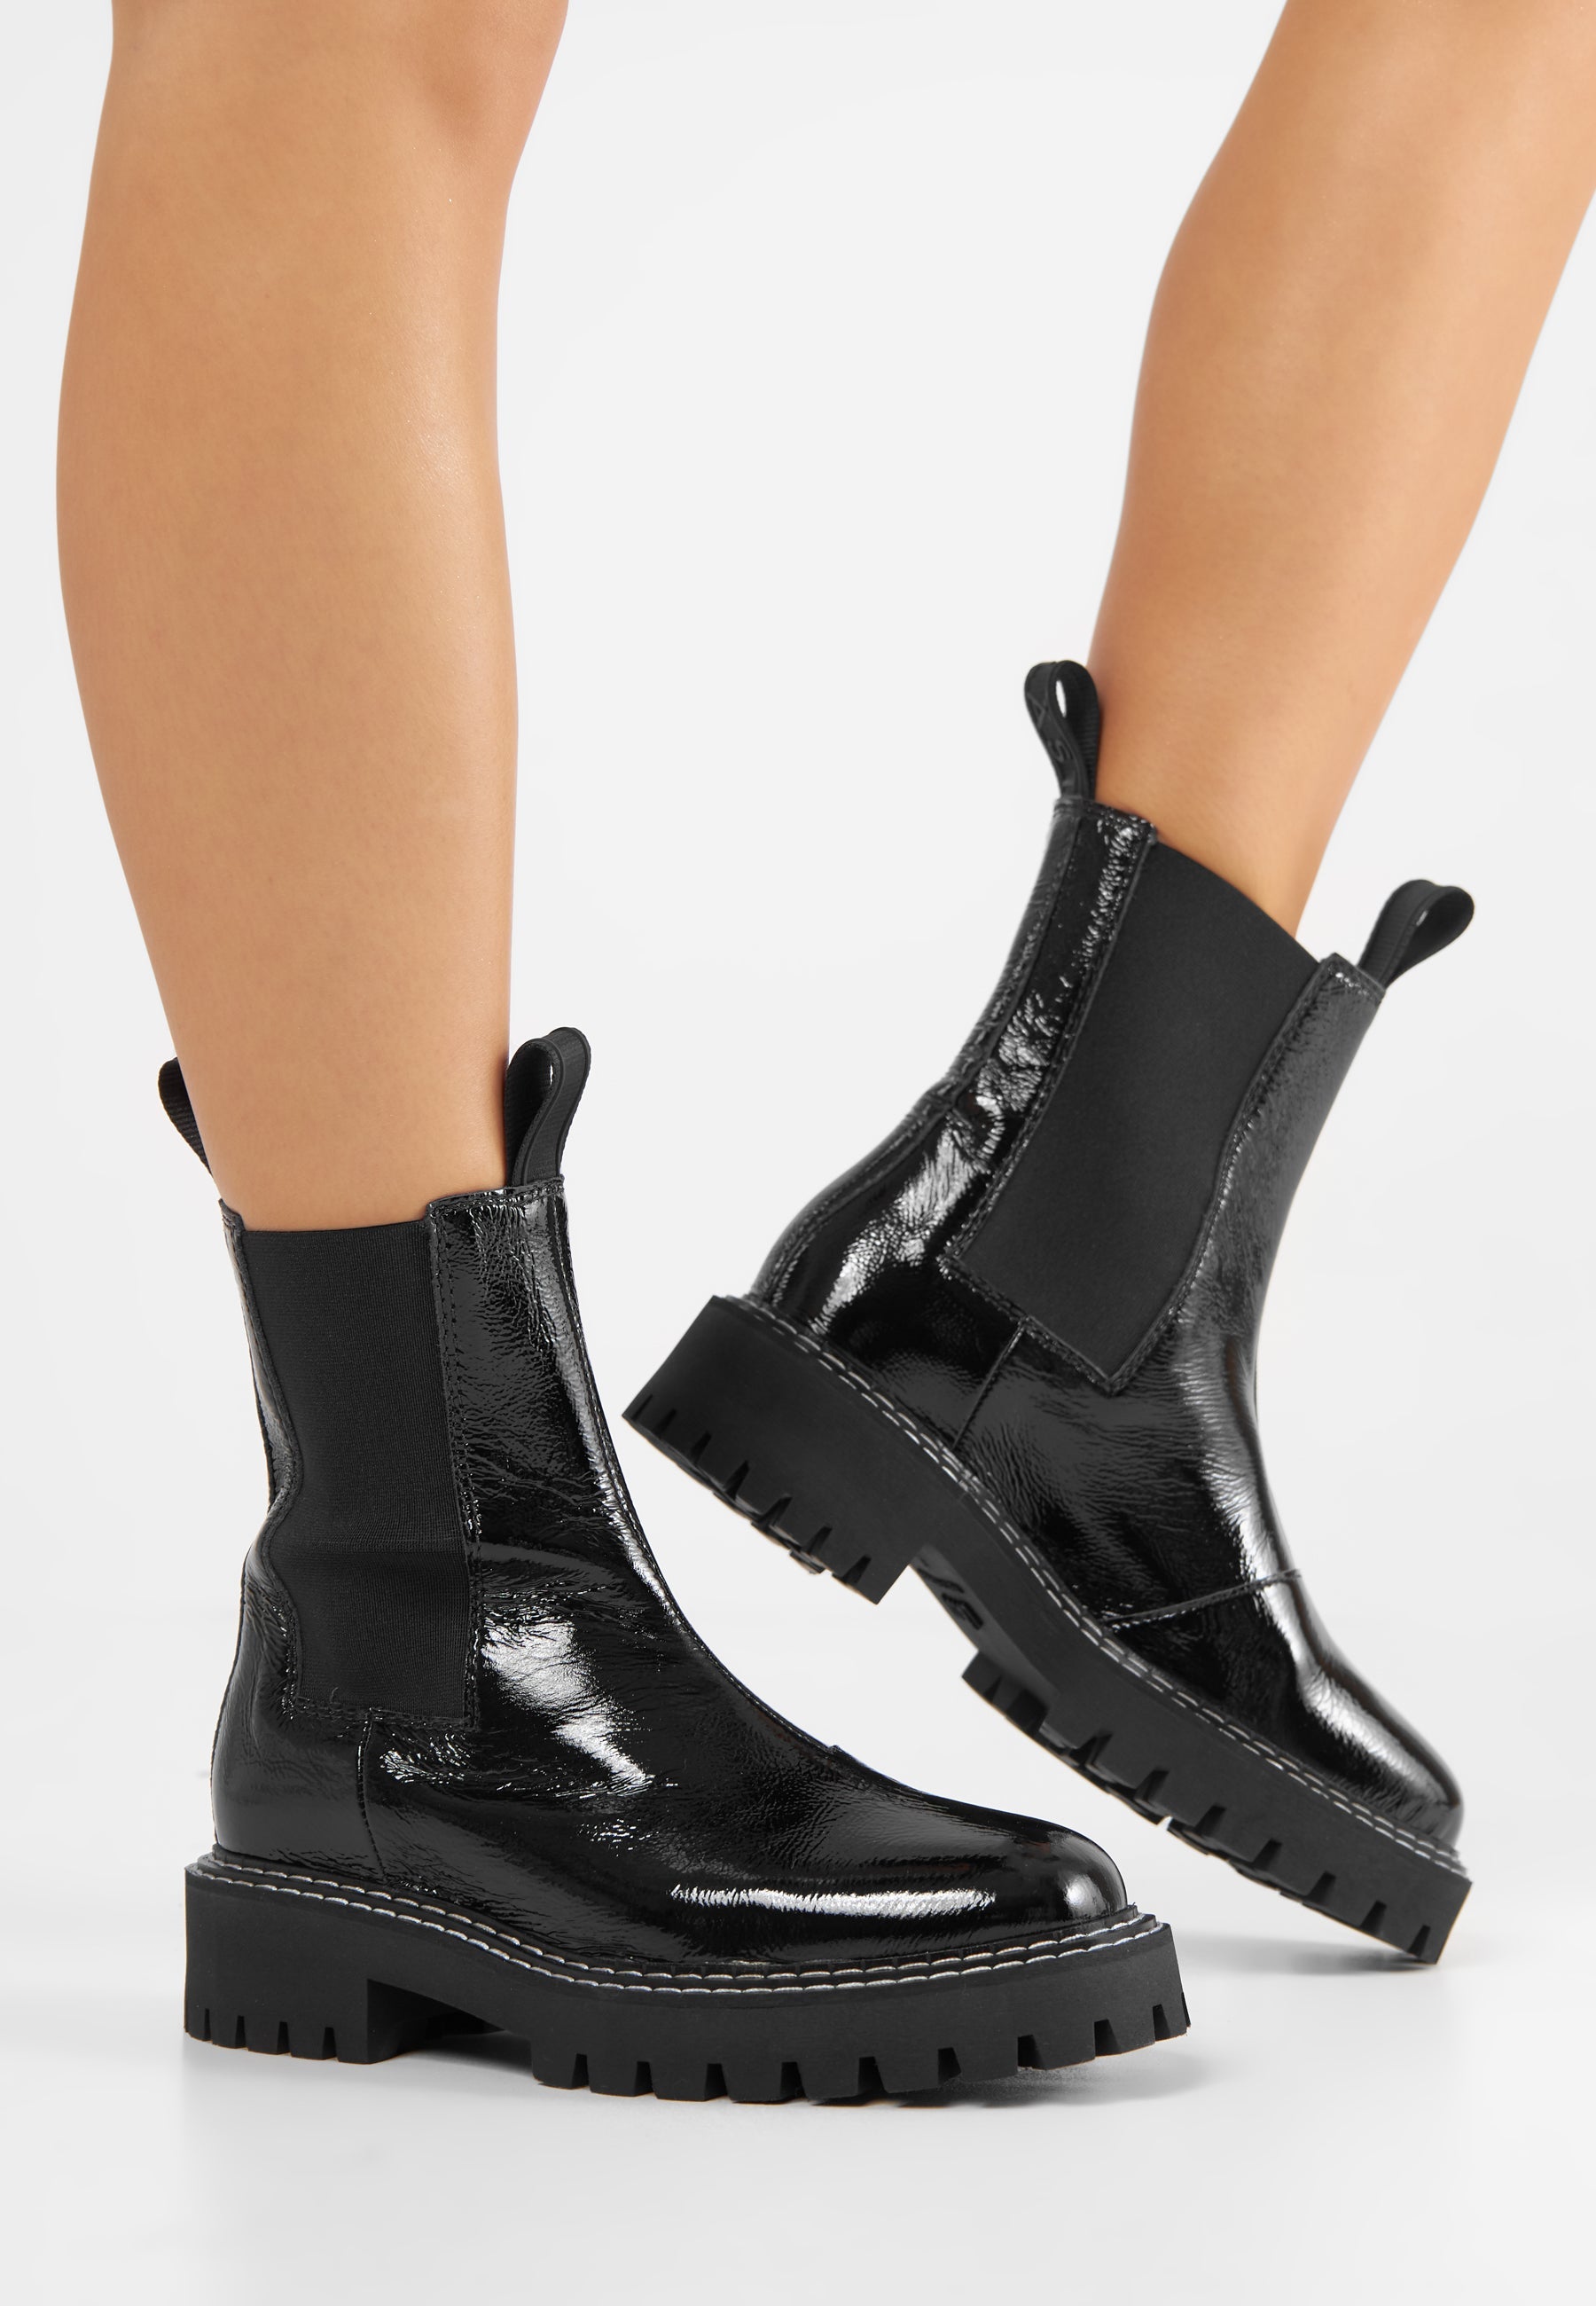 Daze Black Patent Leather Chelsea Boots LAST1677 - 6